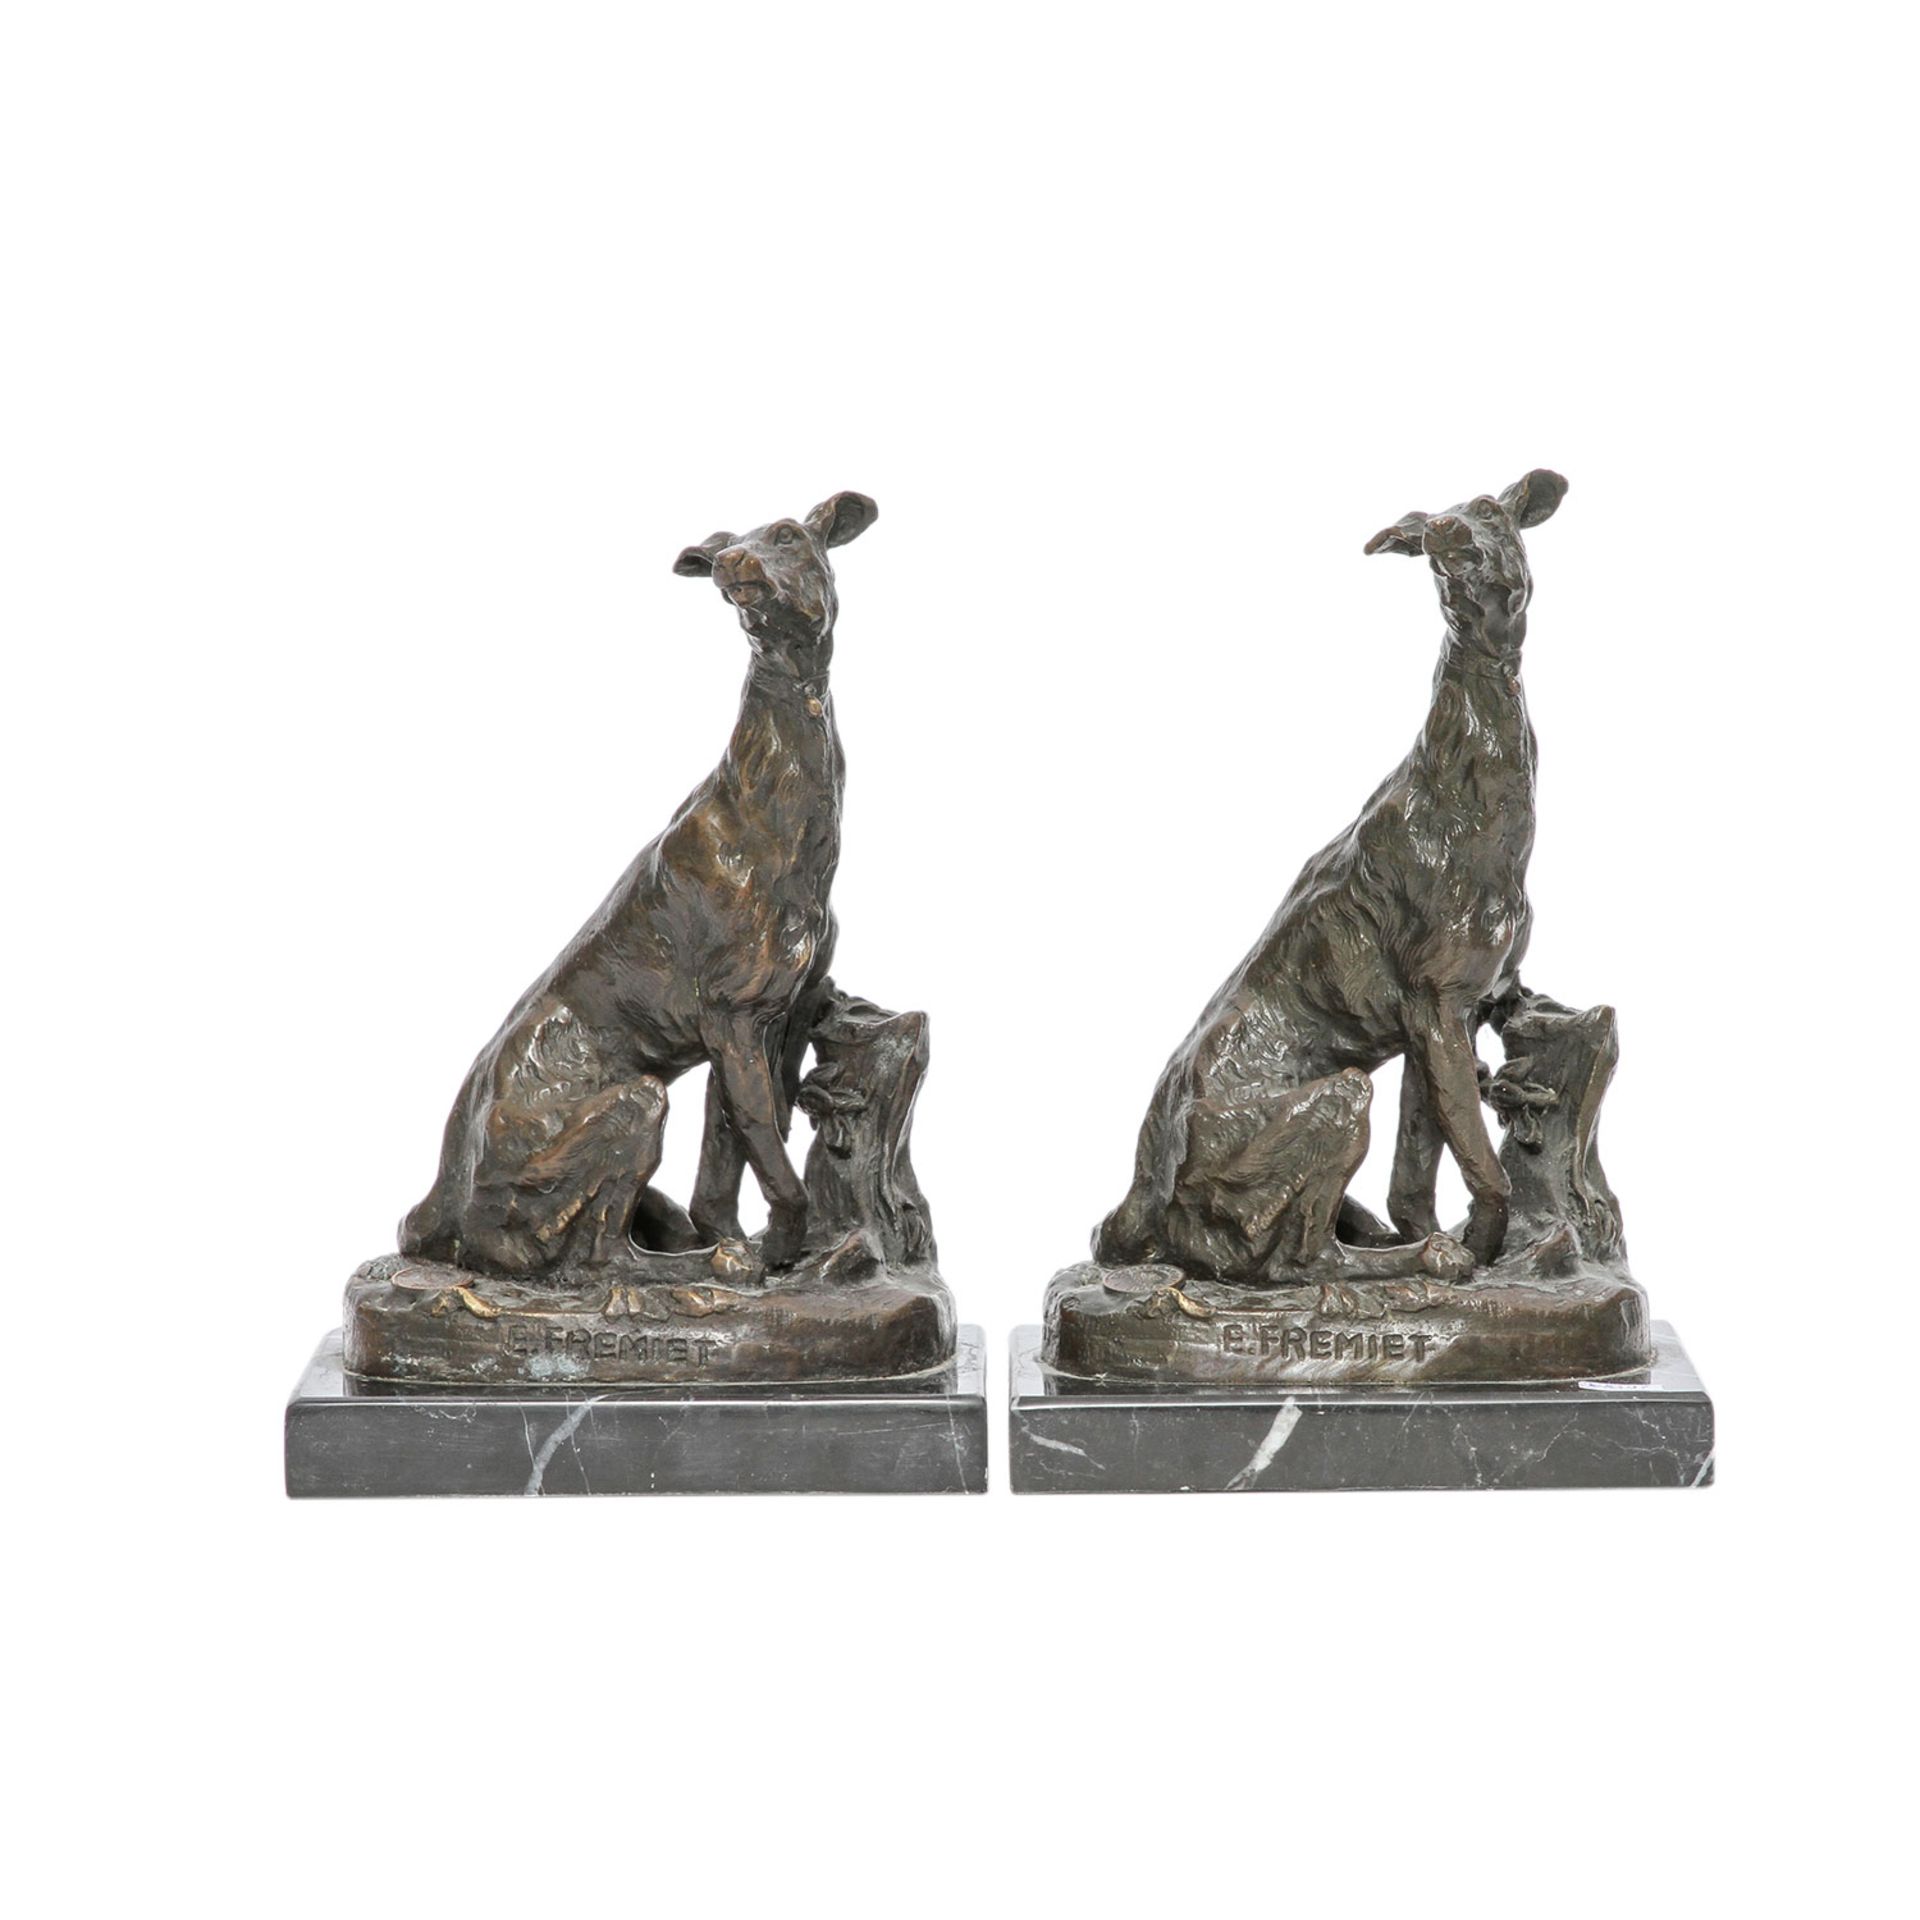 Nach FRÉMIET, Emmanuel (1824-1910) Paar Figuren 'Windhund', 20. Jhd. Bronze, sitzender Windhund, - Image 2 of 7